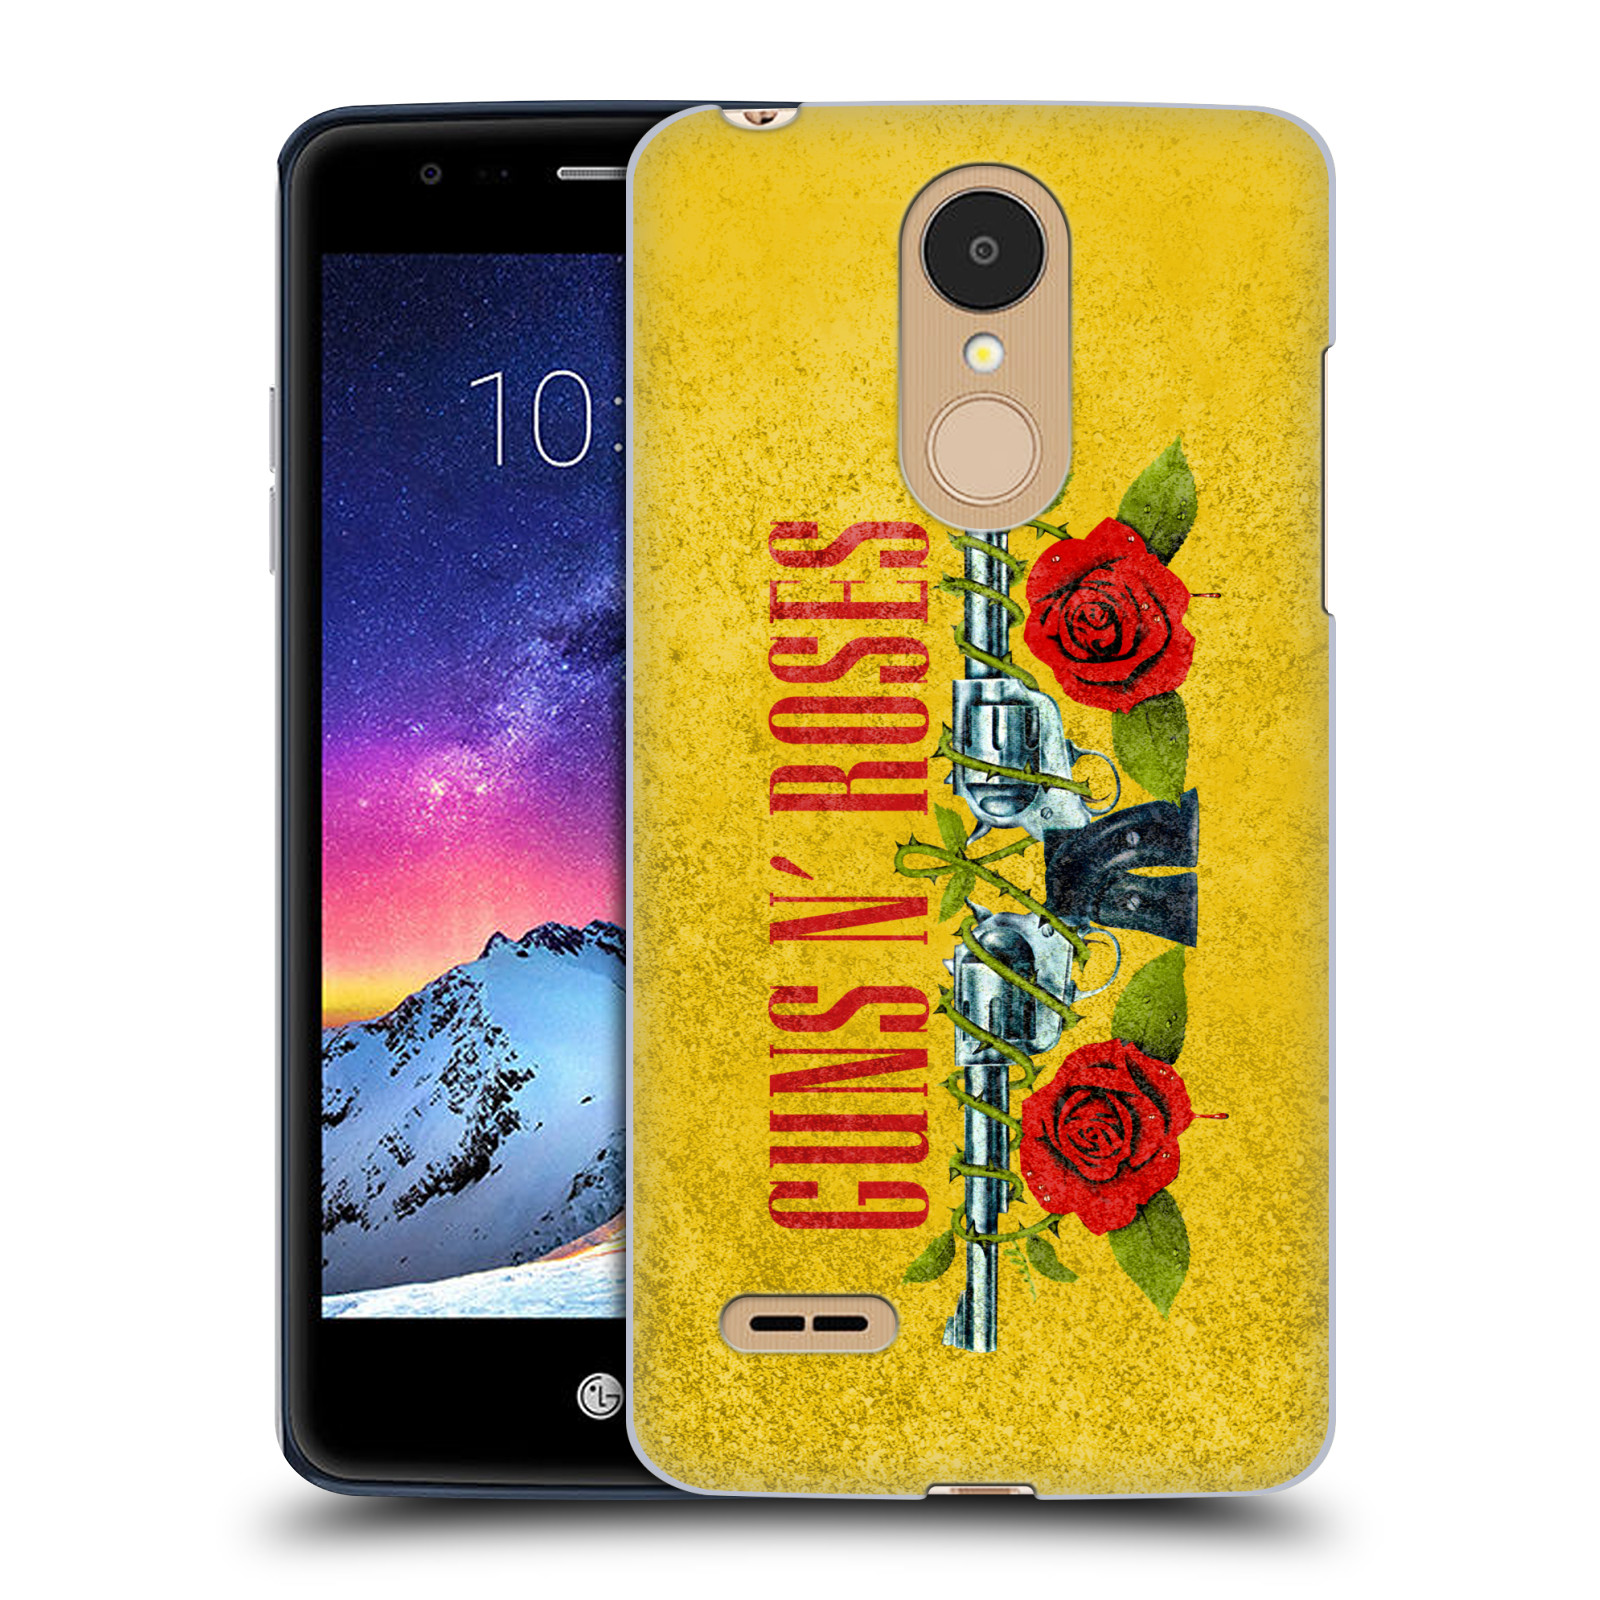 HEAD CASE plastový obal na mobil LG K9 / K8 2018 hudební skupina Guns N Roses pistole a růže žluté pozadí